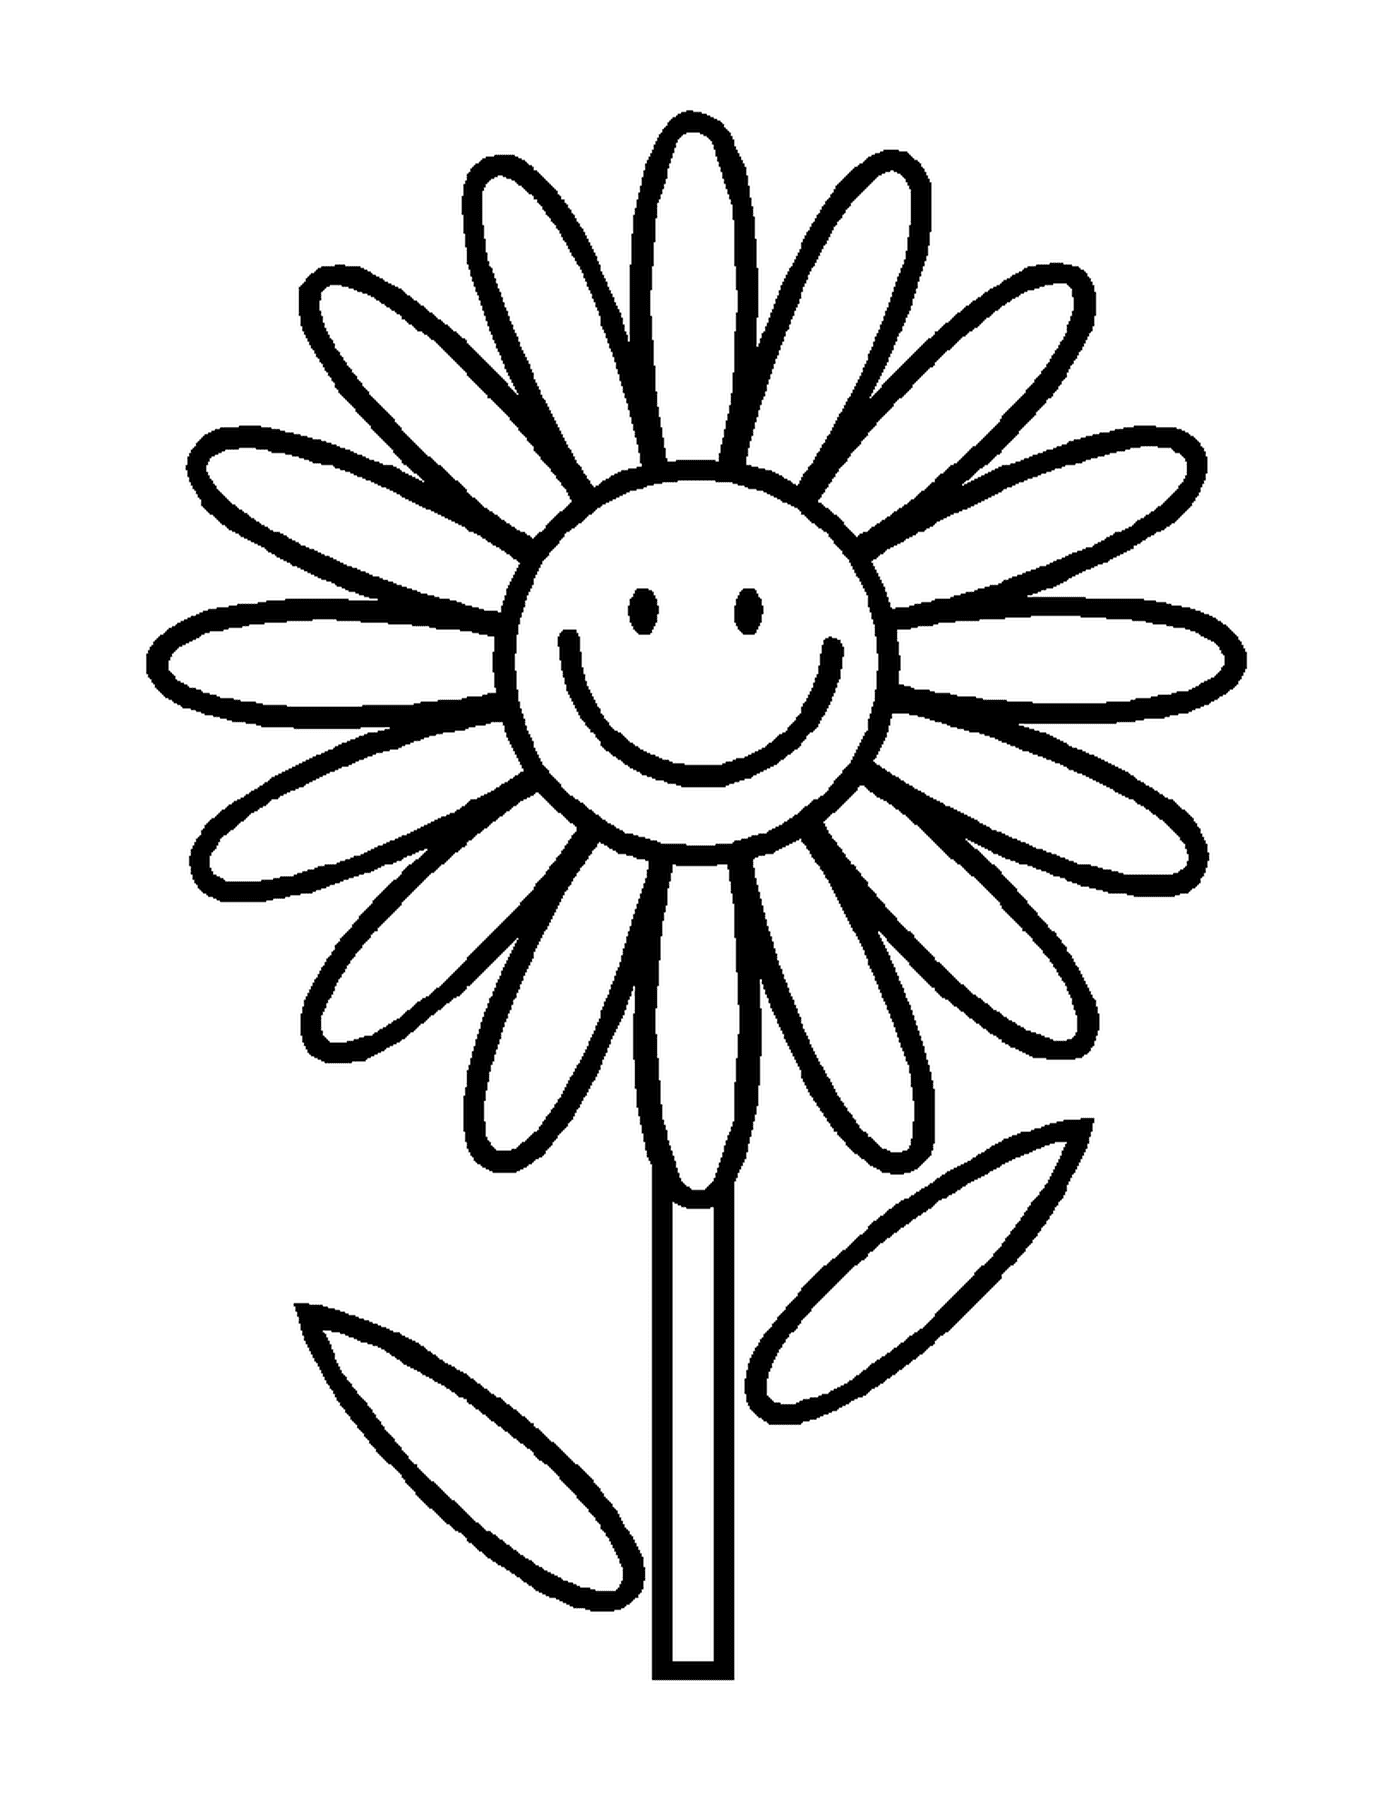  Uma flor sorridente 